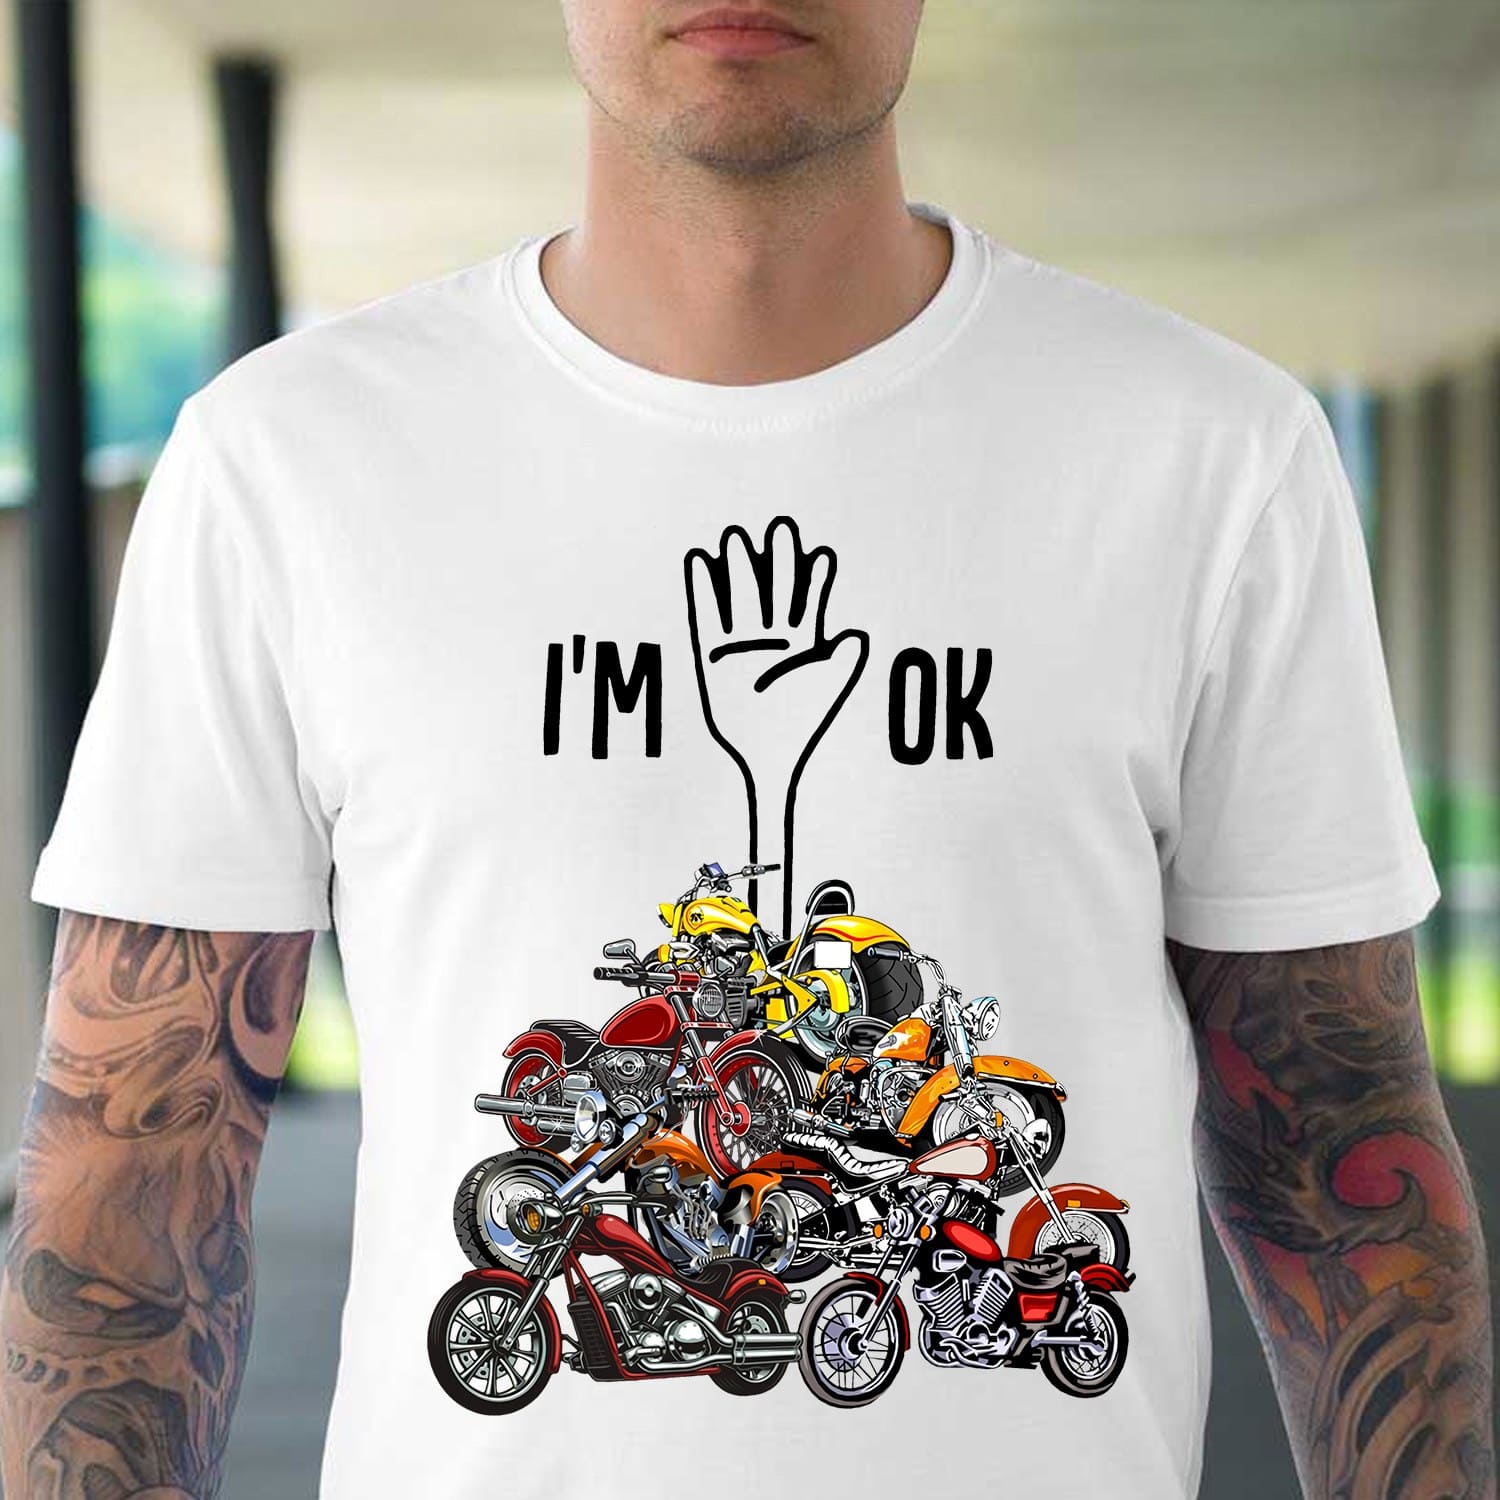 Motorcycle Hand Motorcycle Tee - I'm OK